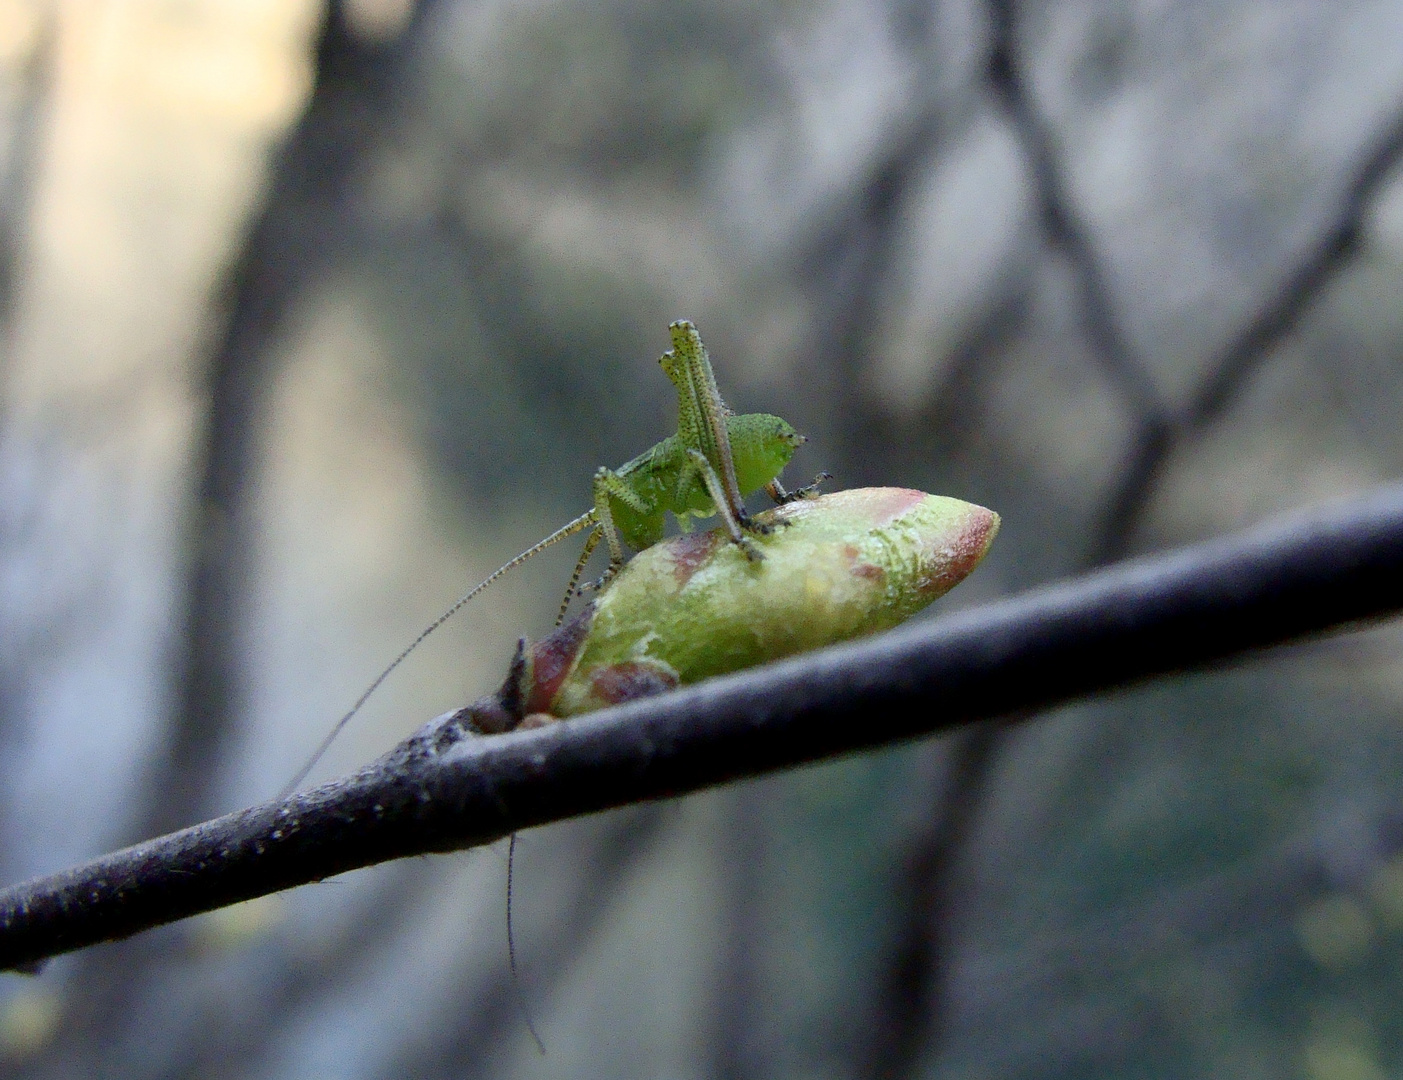 Tiny grasshopper